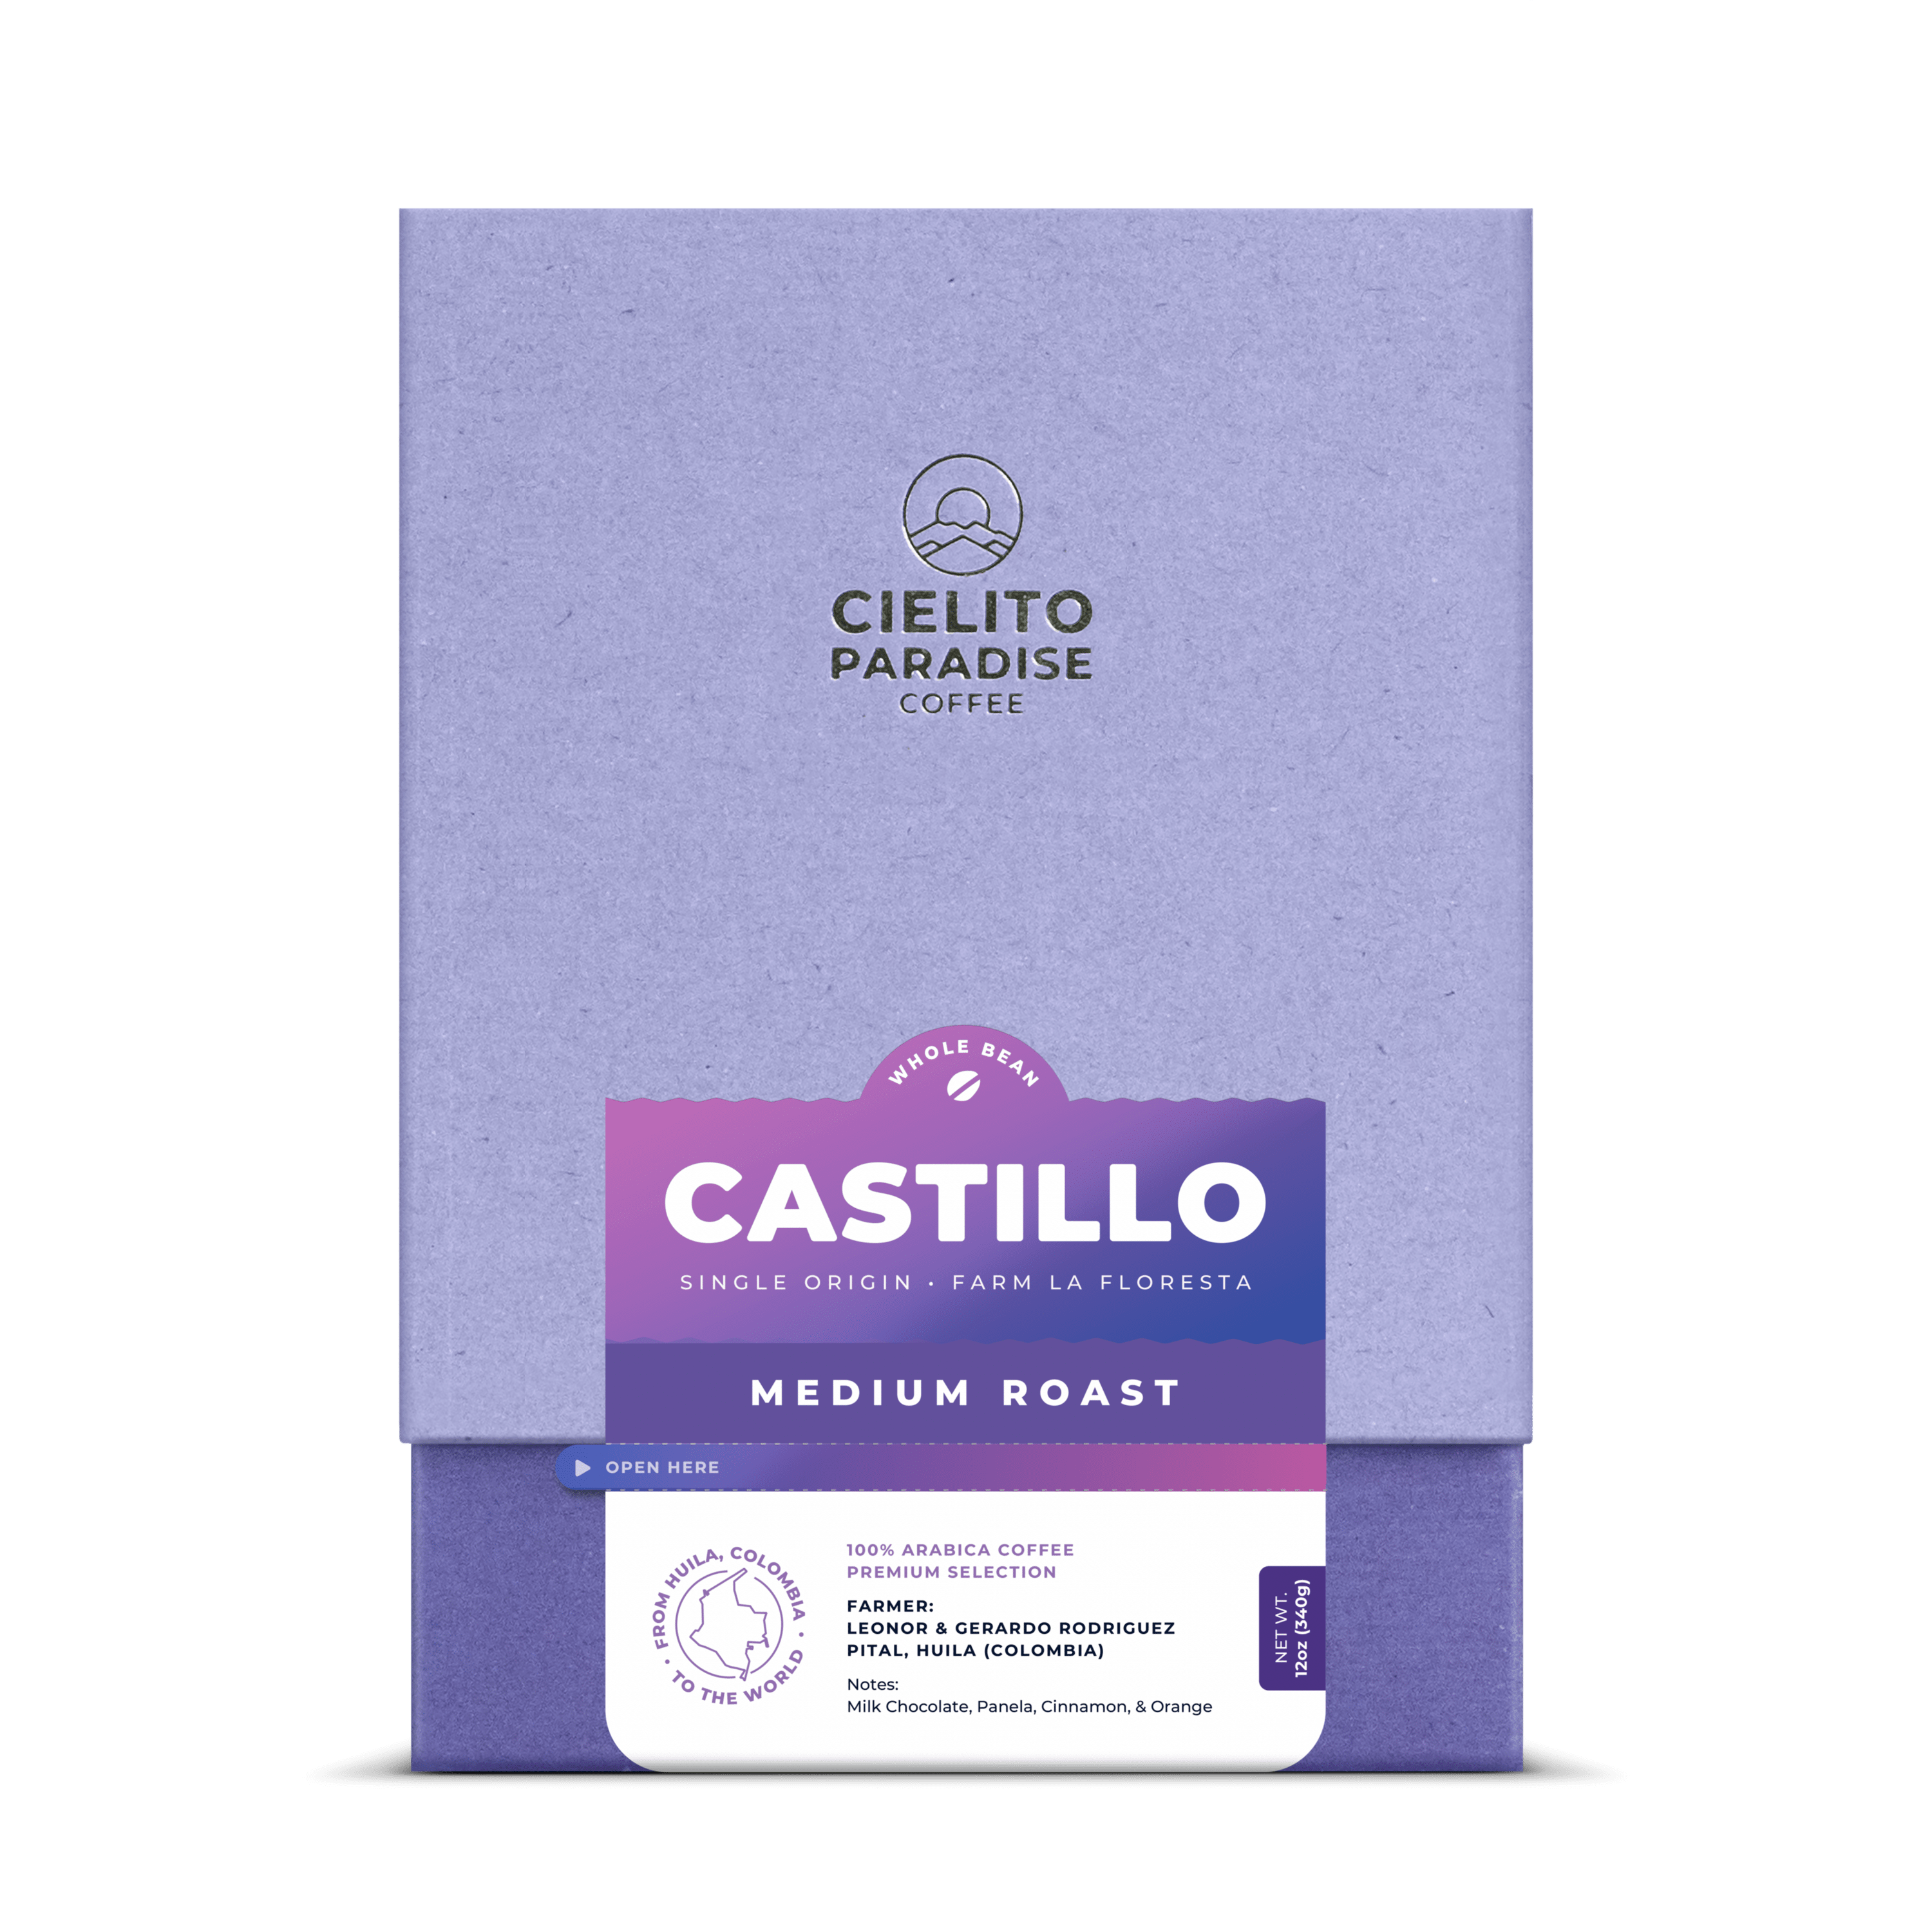 Castillo Medium Roast